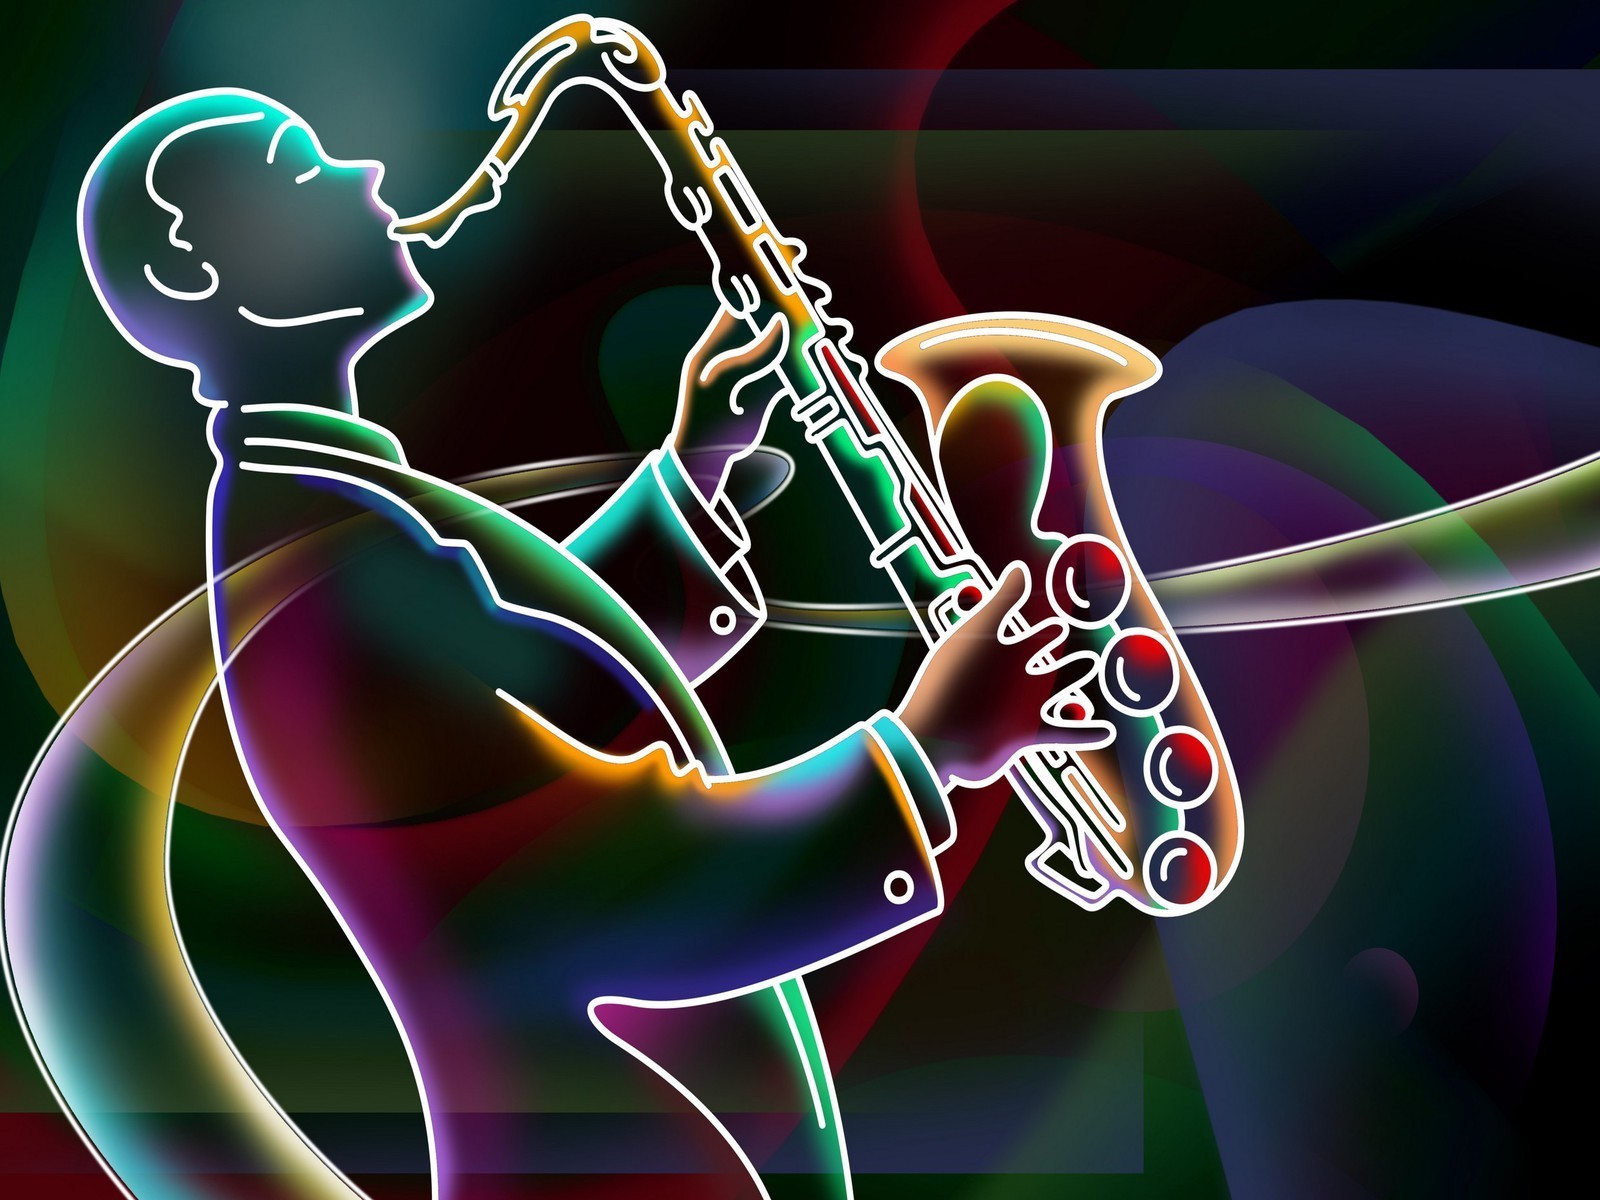 Jazz Wallpaper Images - Free Download on Freepik